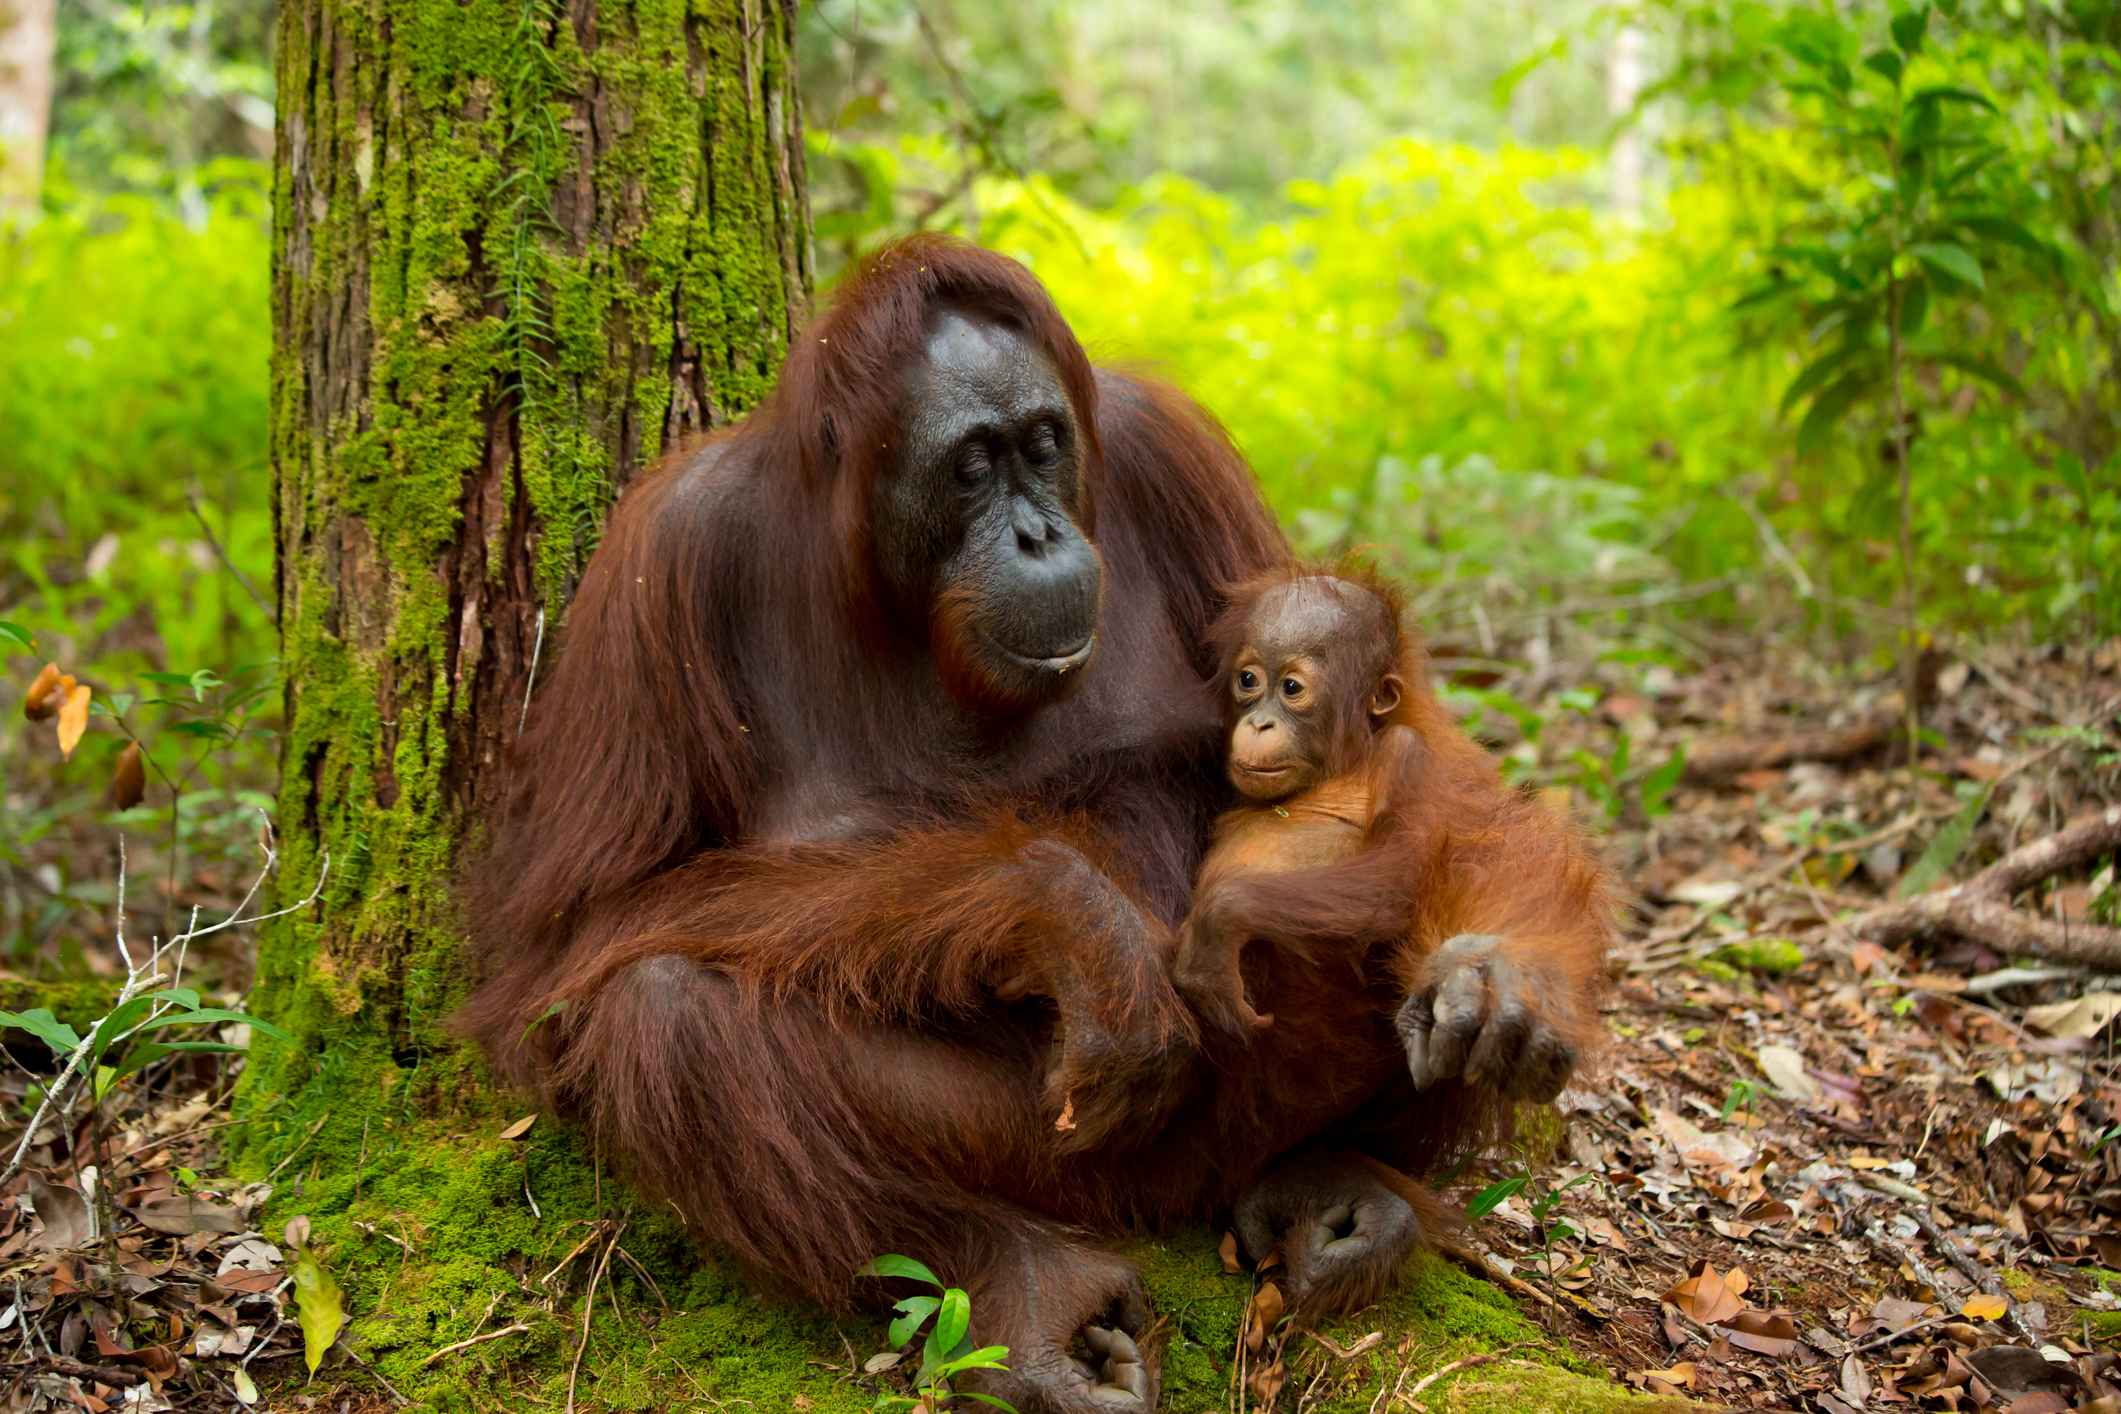 La vida del ‘humano del bosque’ en Borneo, Indonesia